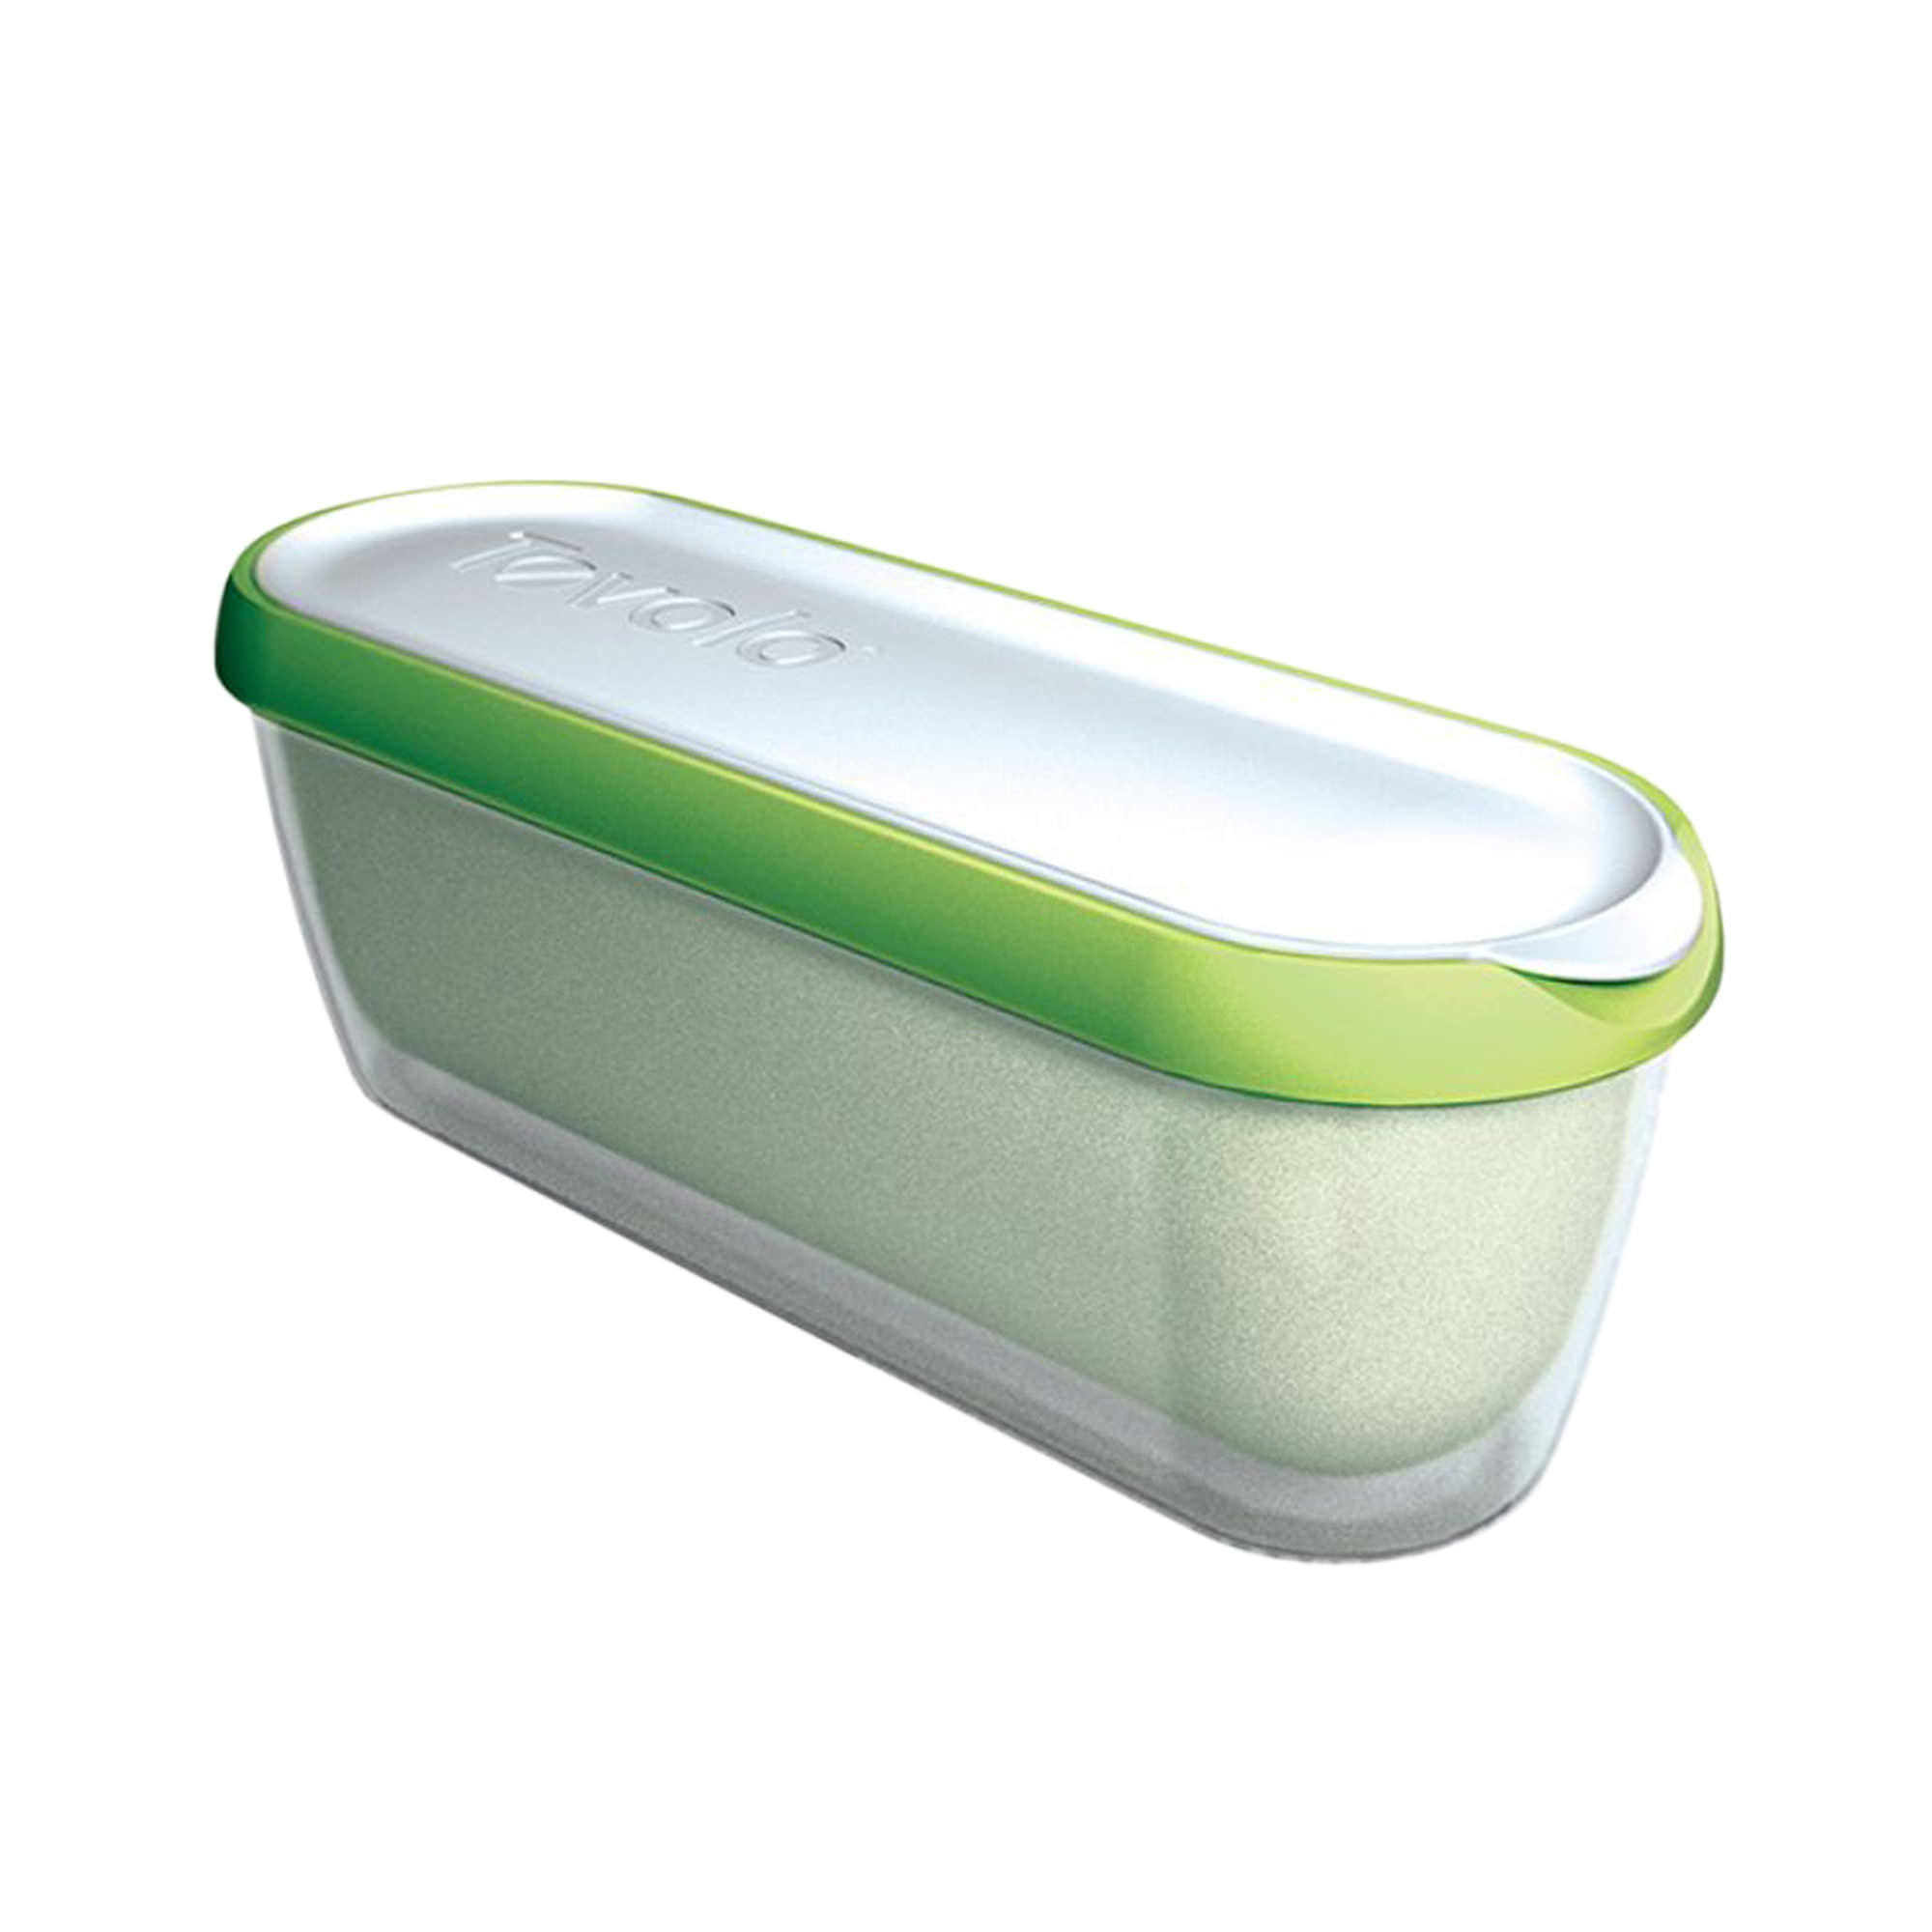 Tovolo Glide-A-Scoop Ice Cream Tub 1.4L Green Image 1